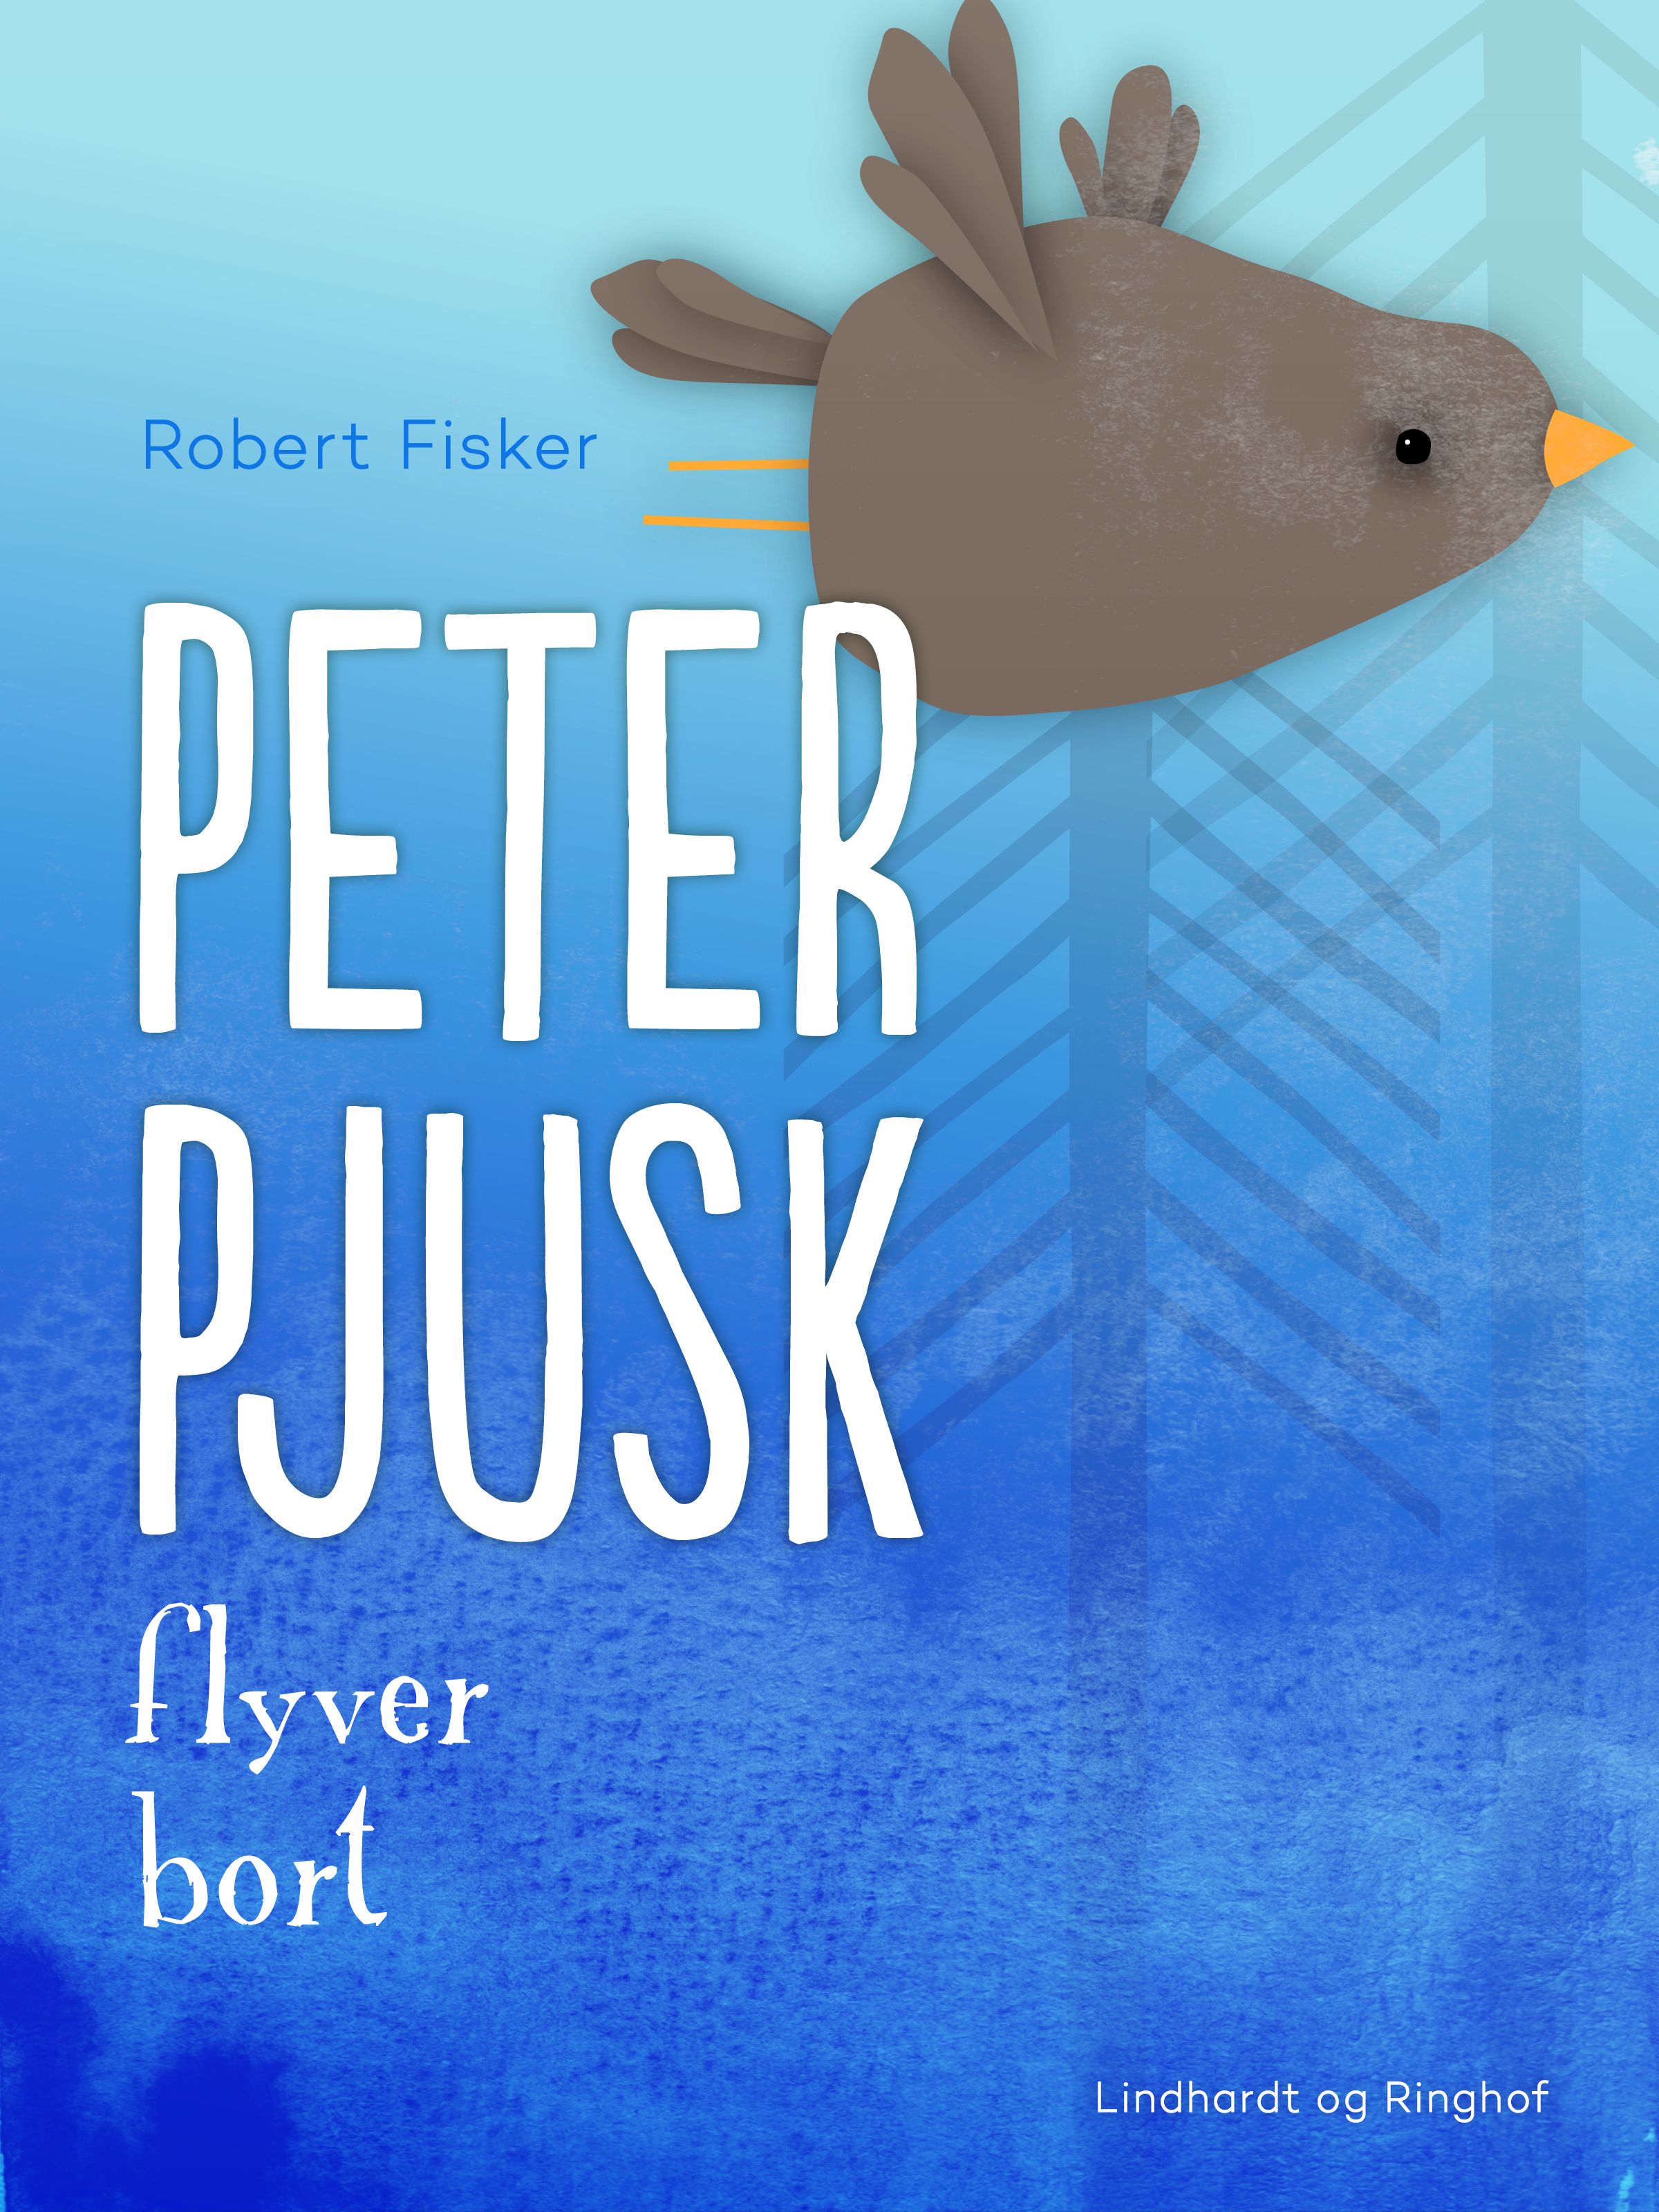 Peter Pjusk flyver bort, ljudbok av Robert Fisker